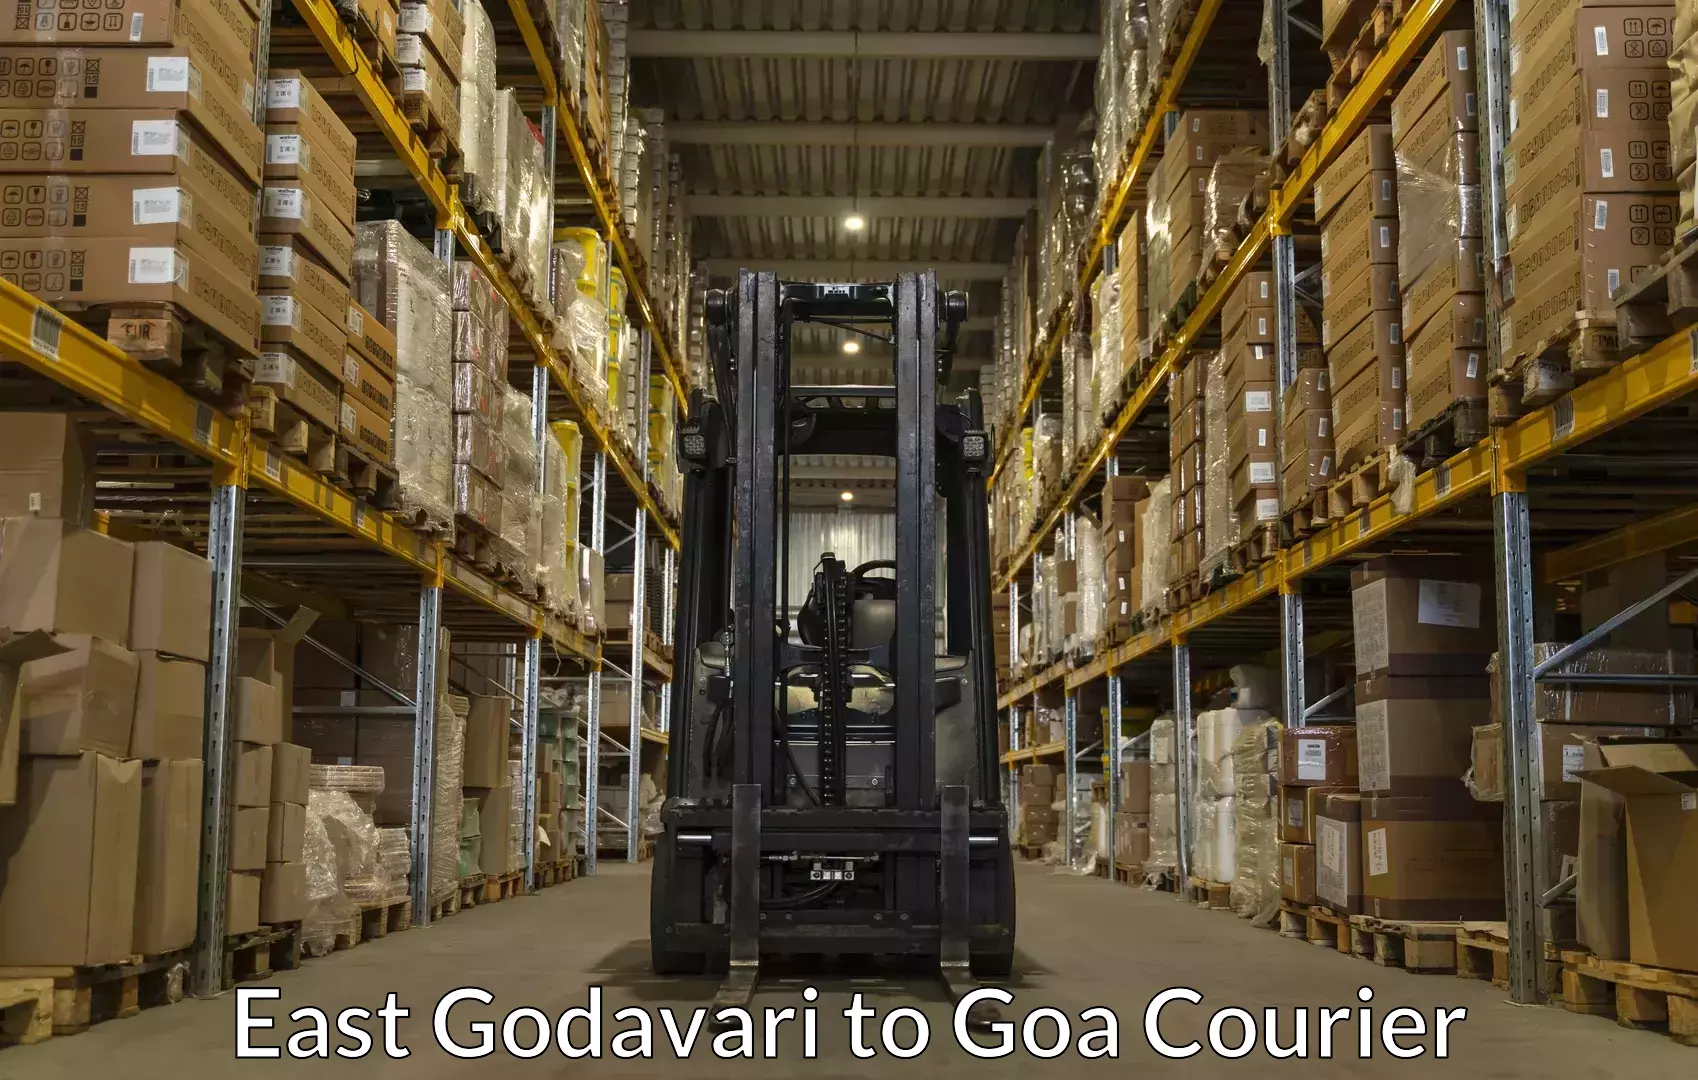 Household goods transport service East Godavari to NIT Goa